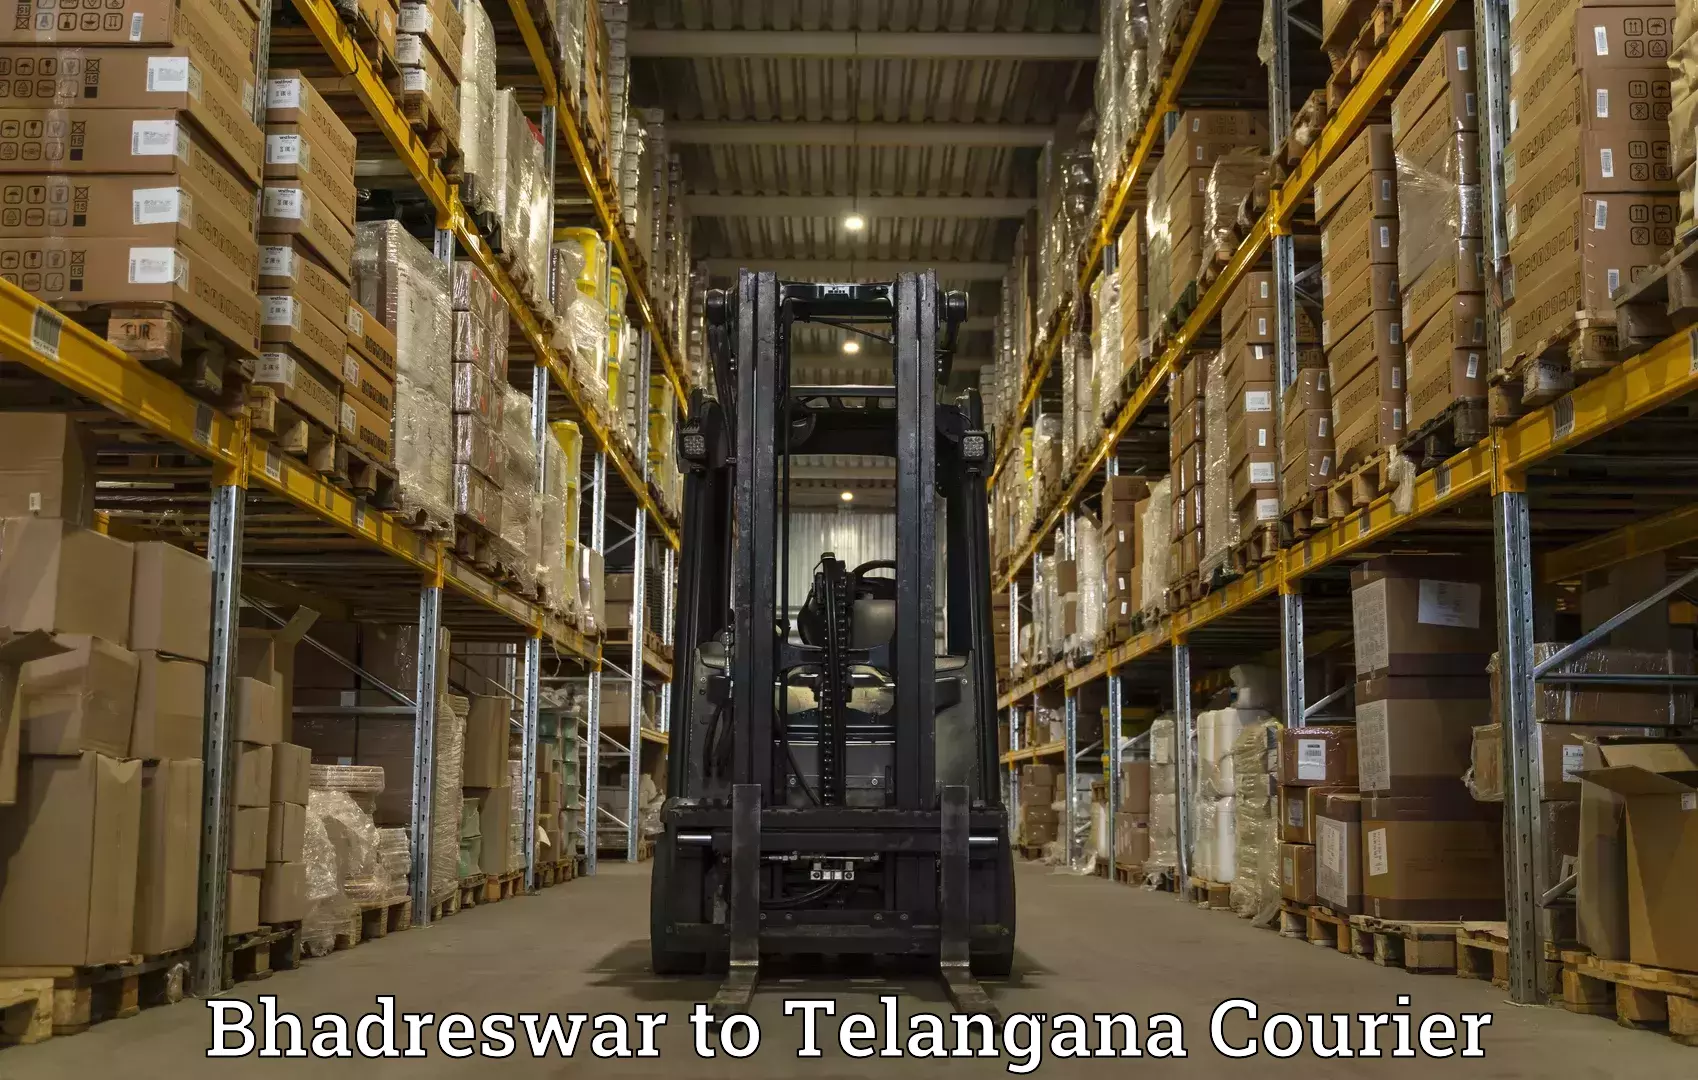 Modern courier technology Bhadreswar to Kacheguda